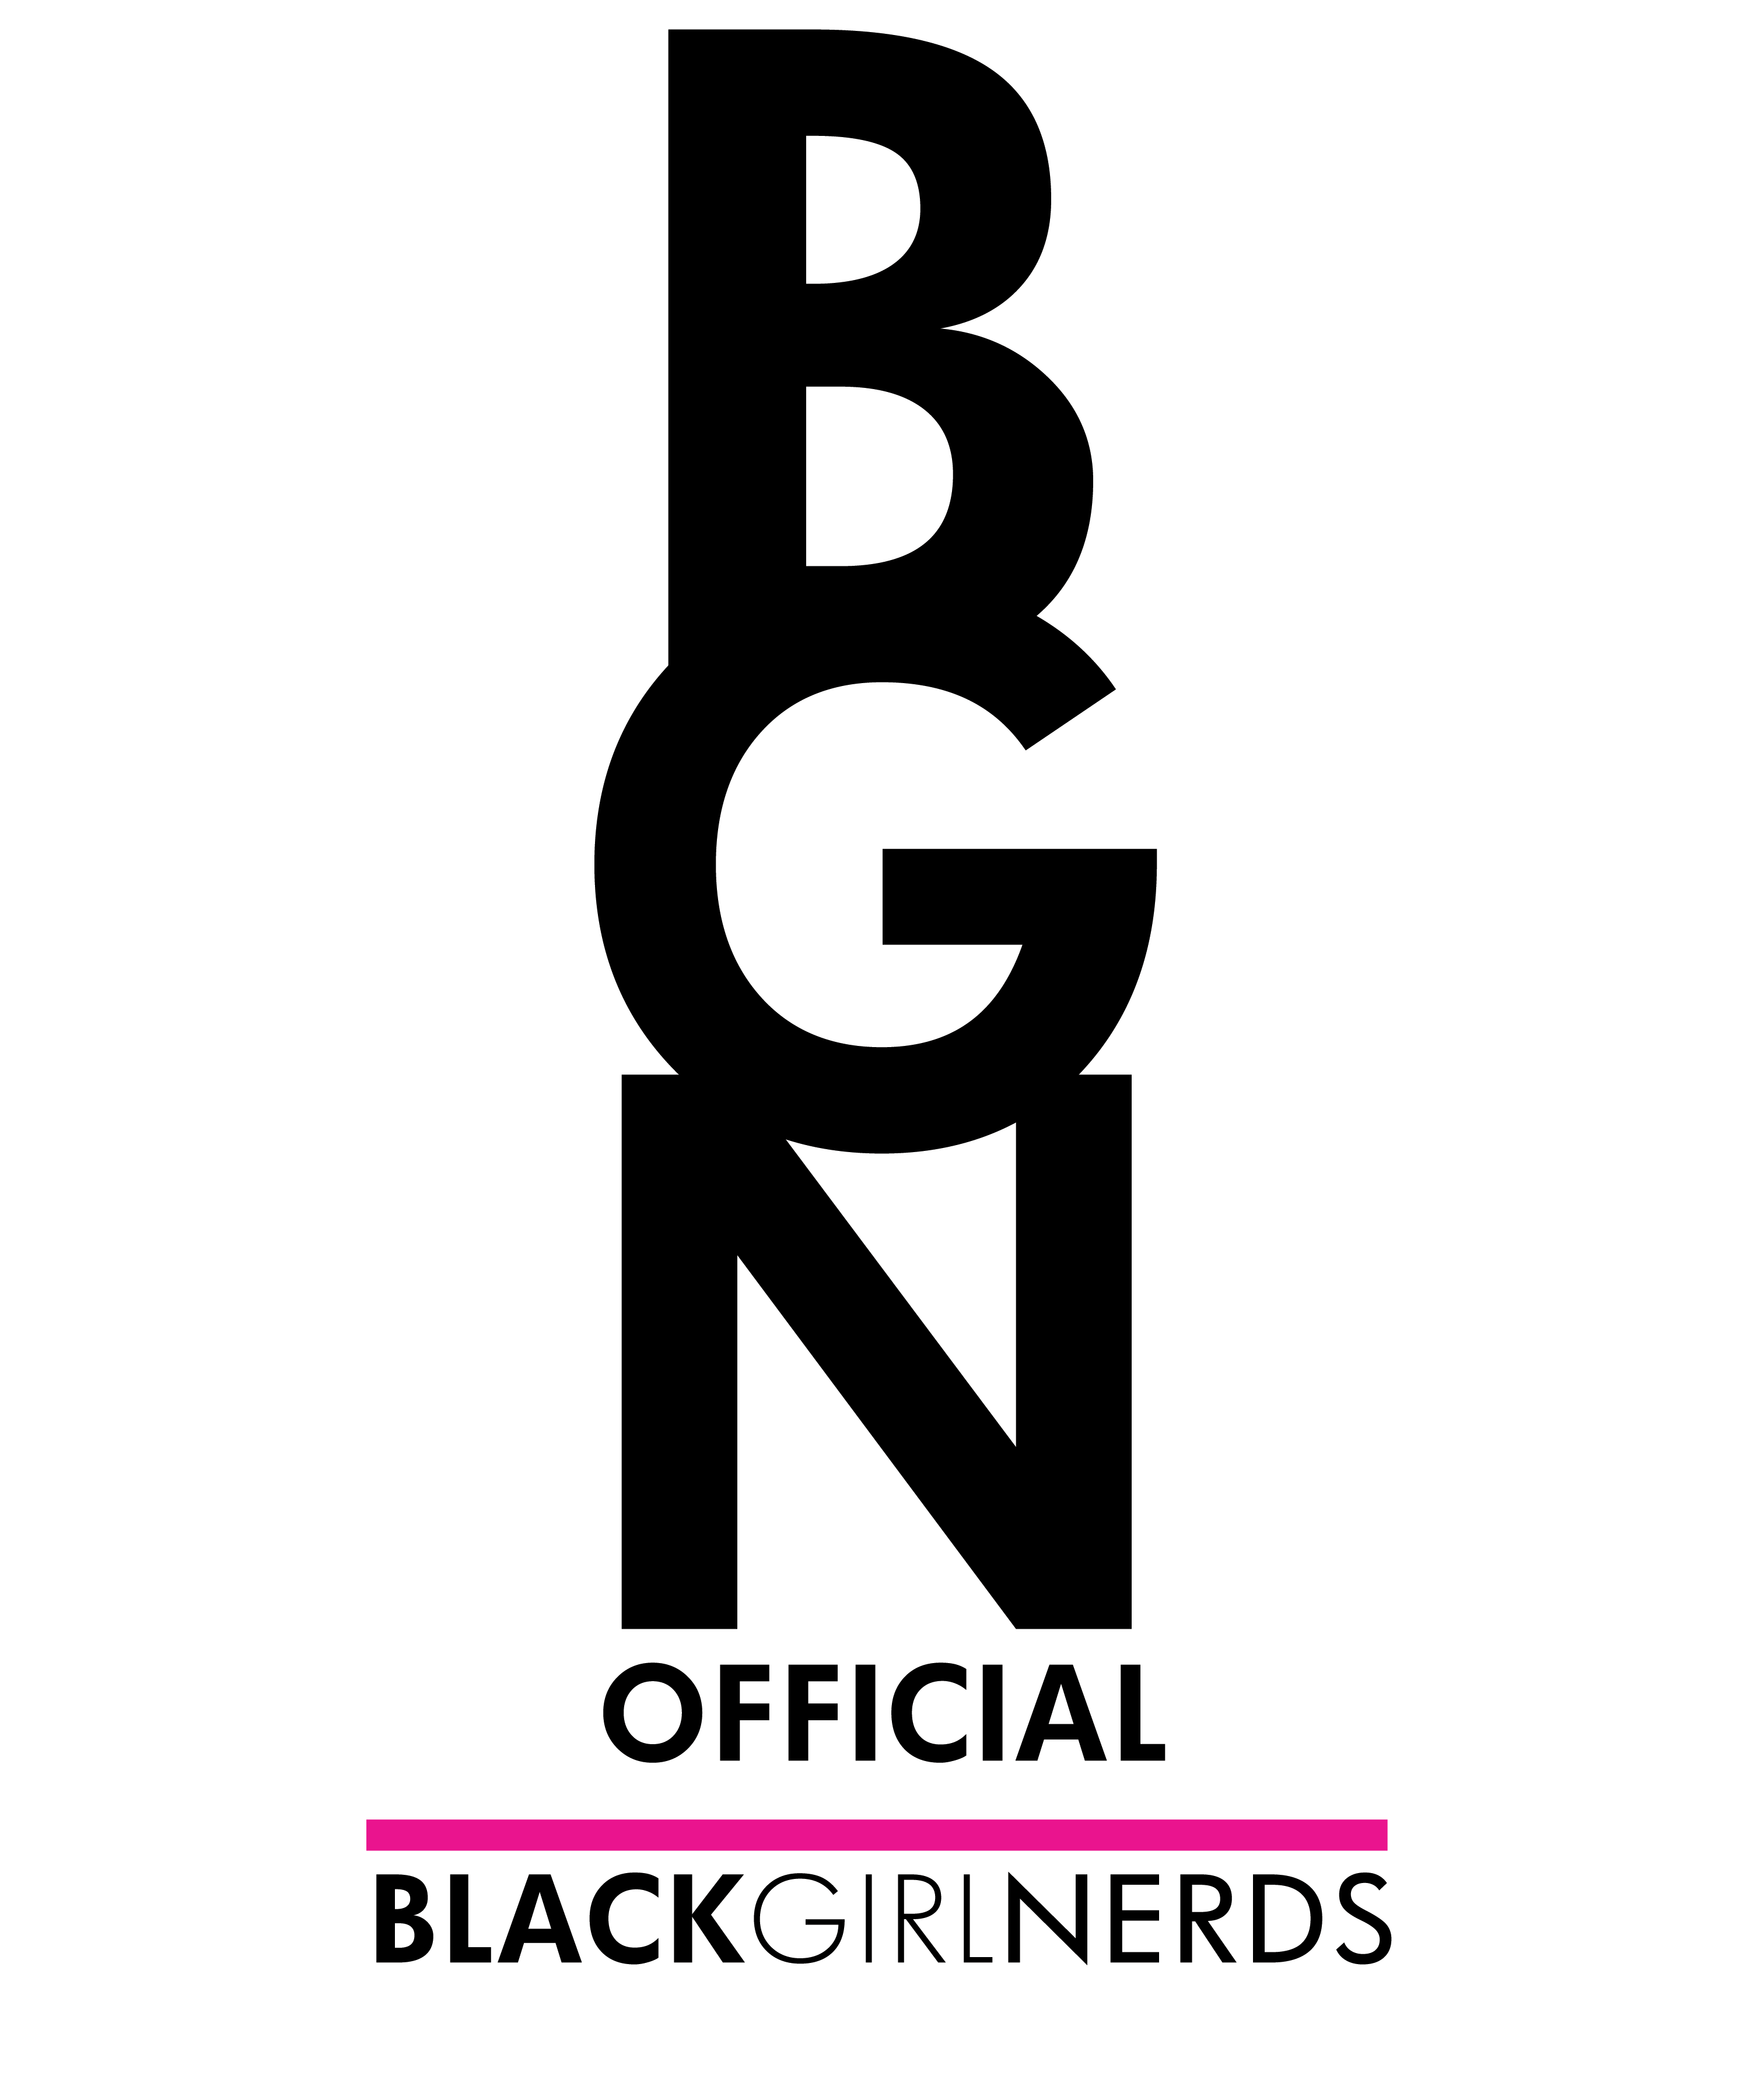 Girl Black Logo - Advertise. Black Girl Nerds